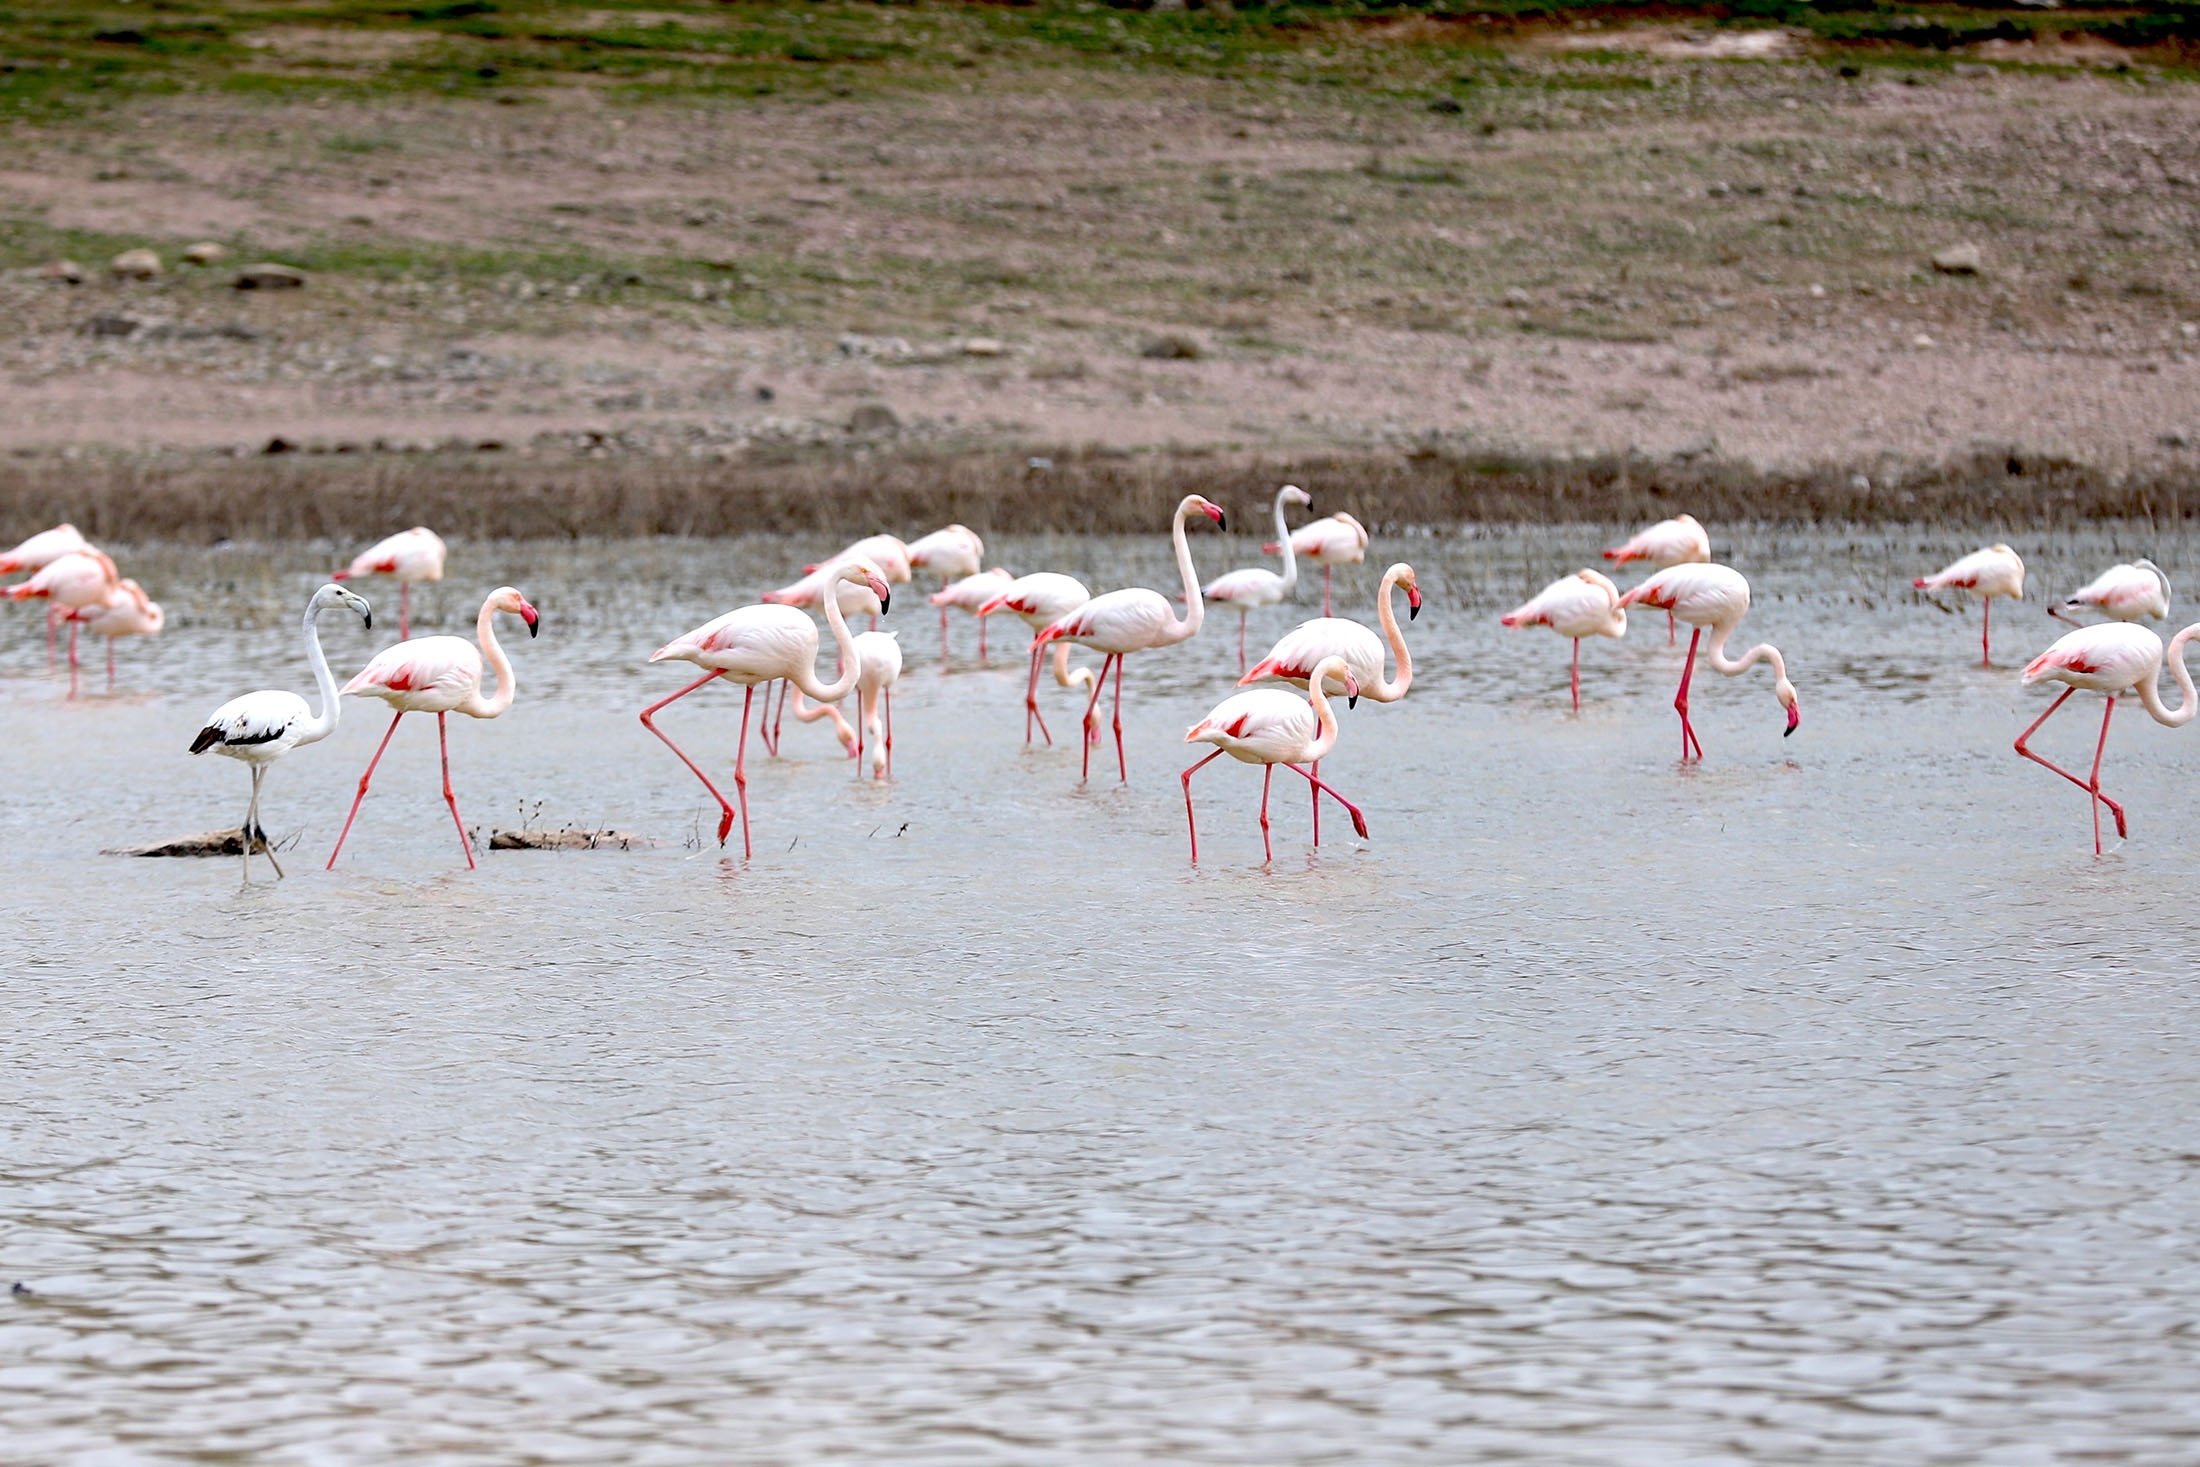 Flamingo beristirahat di atas Danau Tuz, di Aksaray, Türkiye, 9 April 2023. (Foto AA)